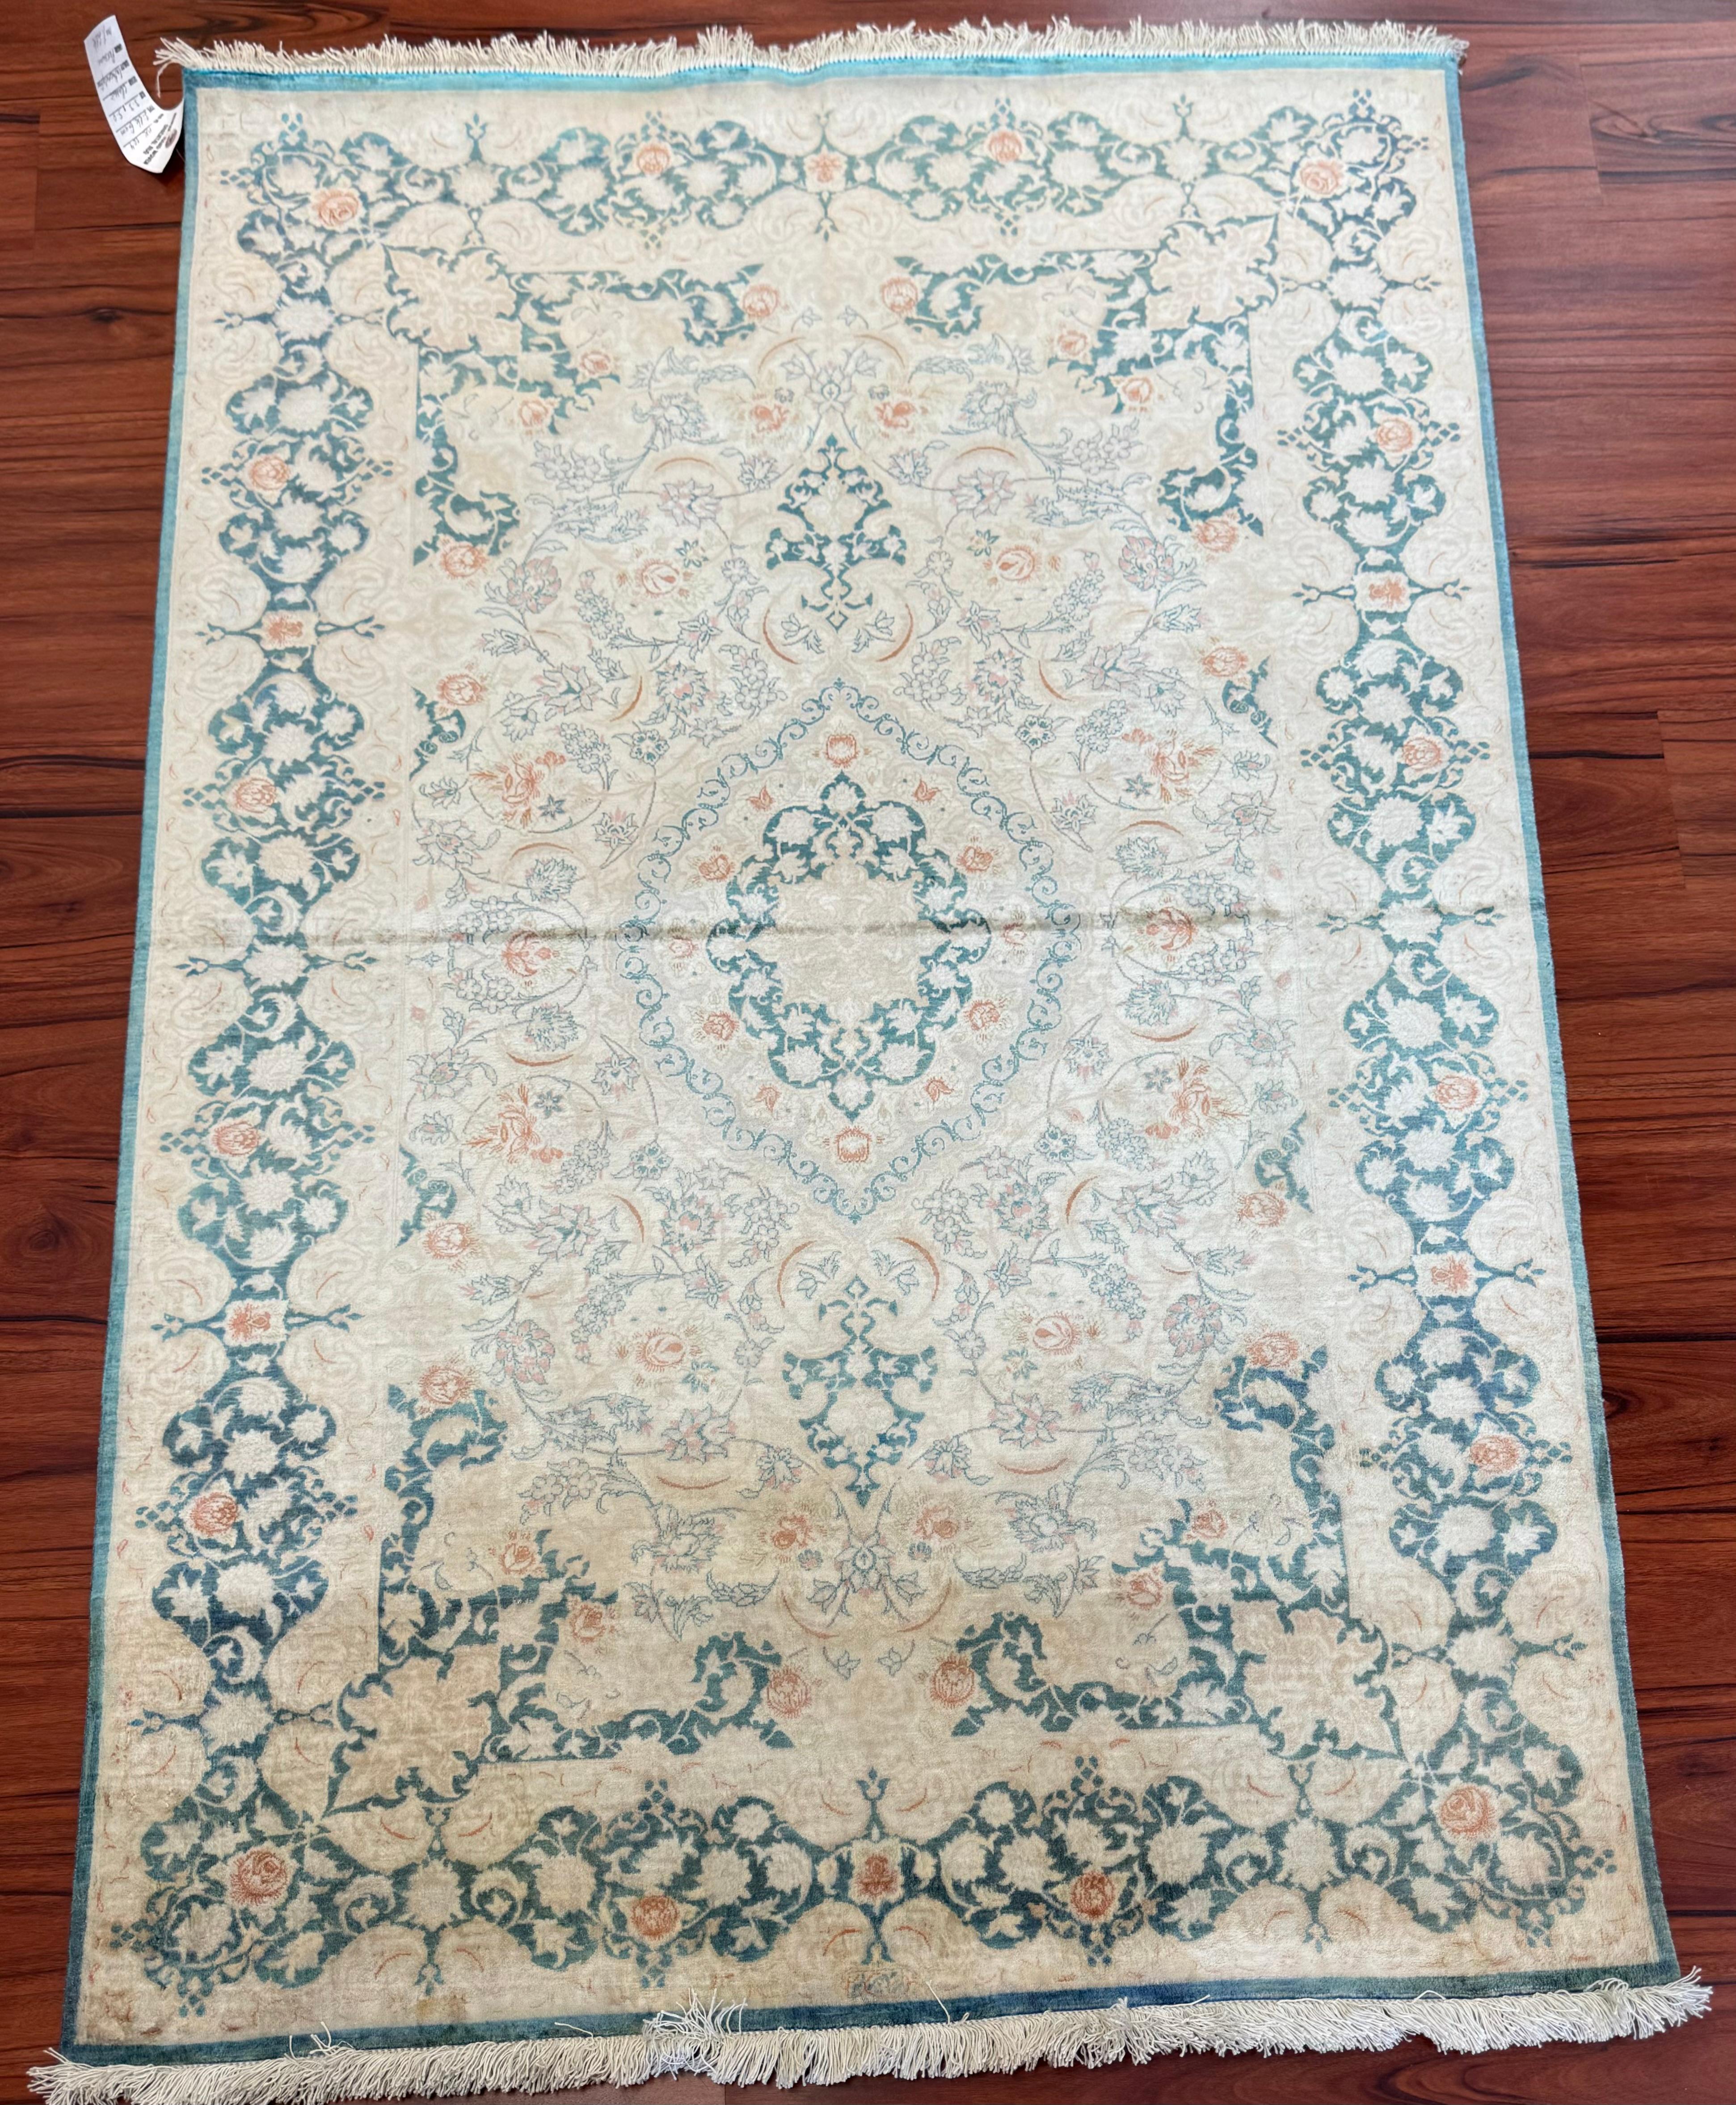 Un superbe tapis Qum en soie persane d'une extrême finesse, originaire d'Iran au milieu du 20e siècle. Ce tapis est en excellent état compte tenu de sa riche histoire et n'a subi aucune réparation. Ce magnifique tapis est doté d'un superbe design